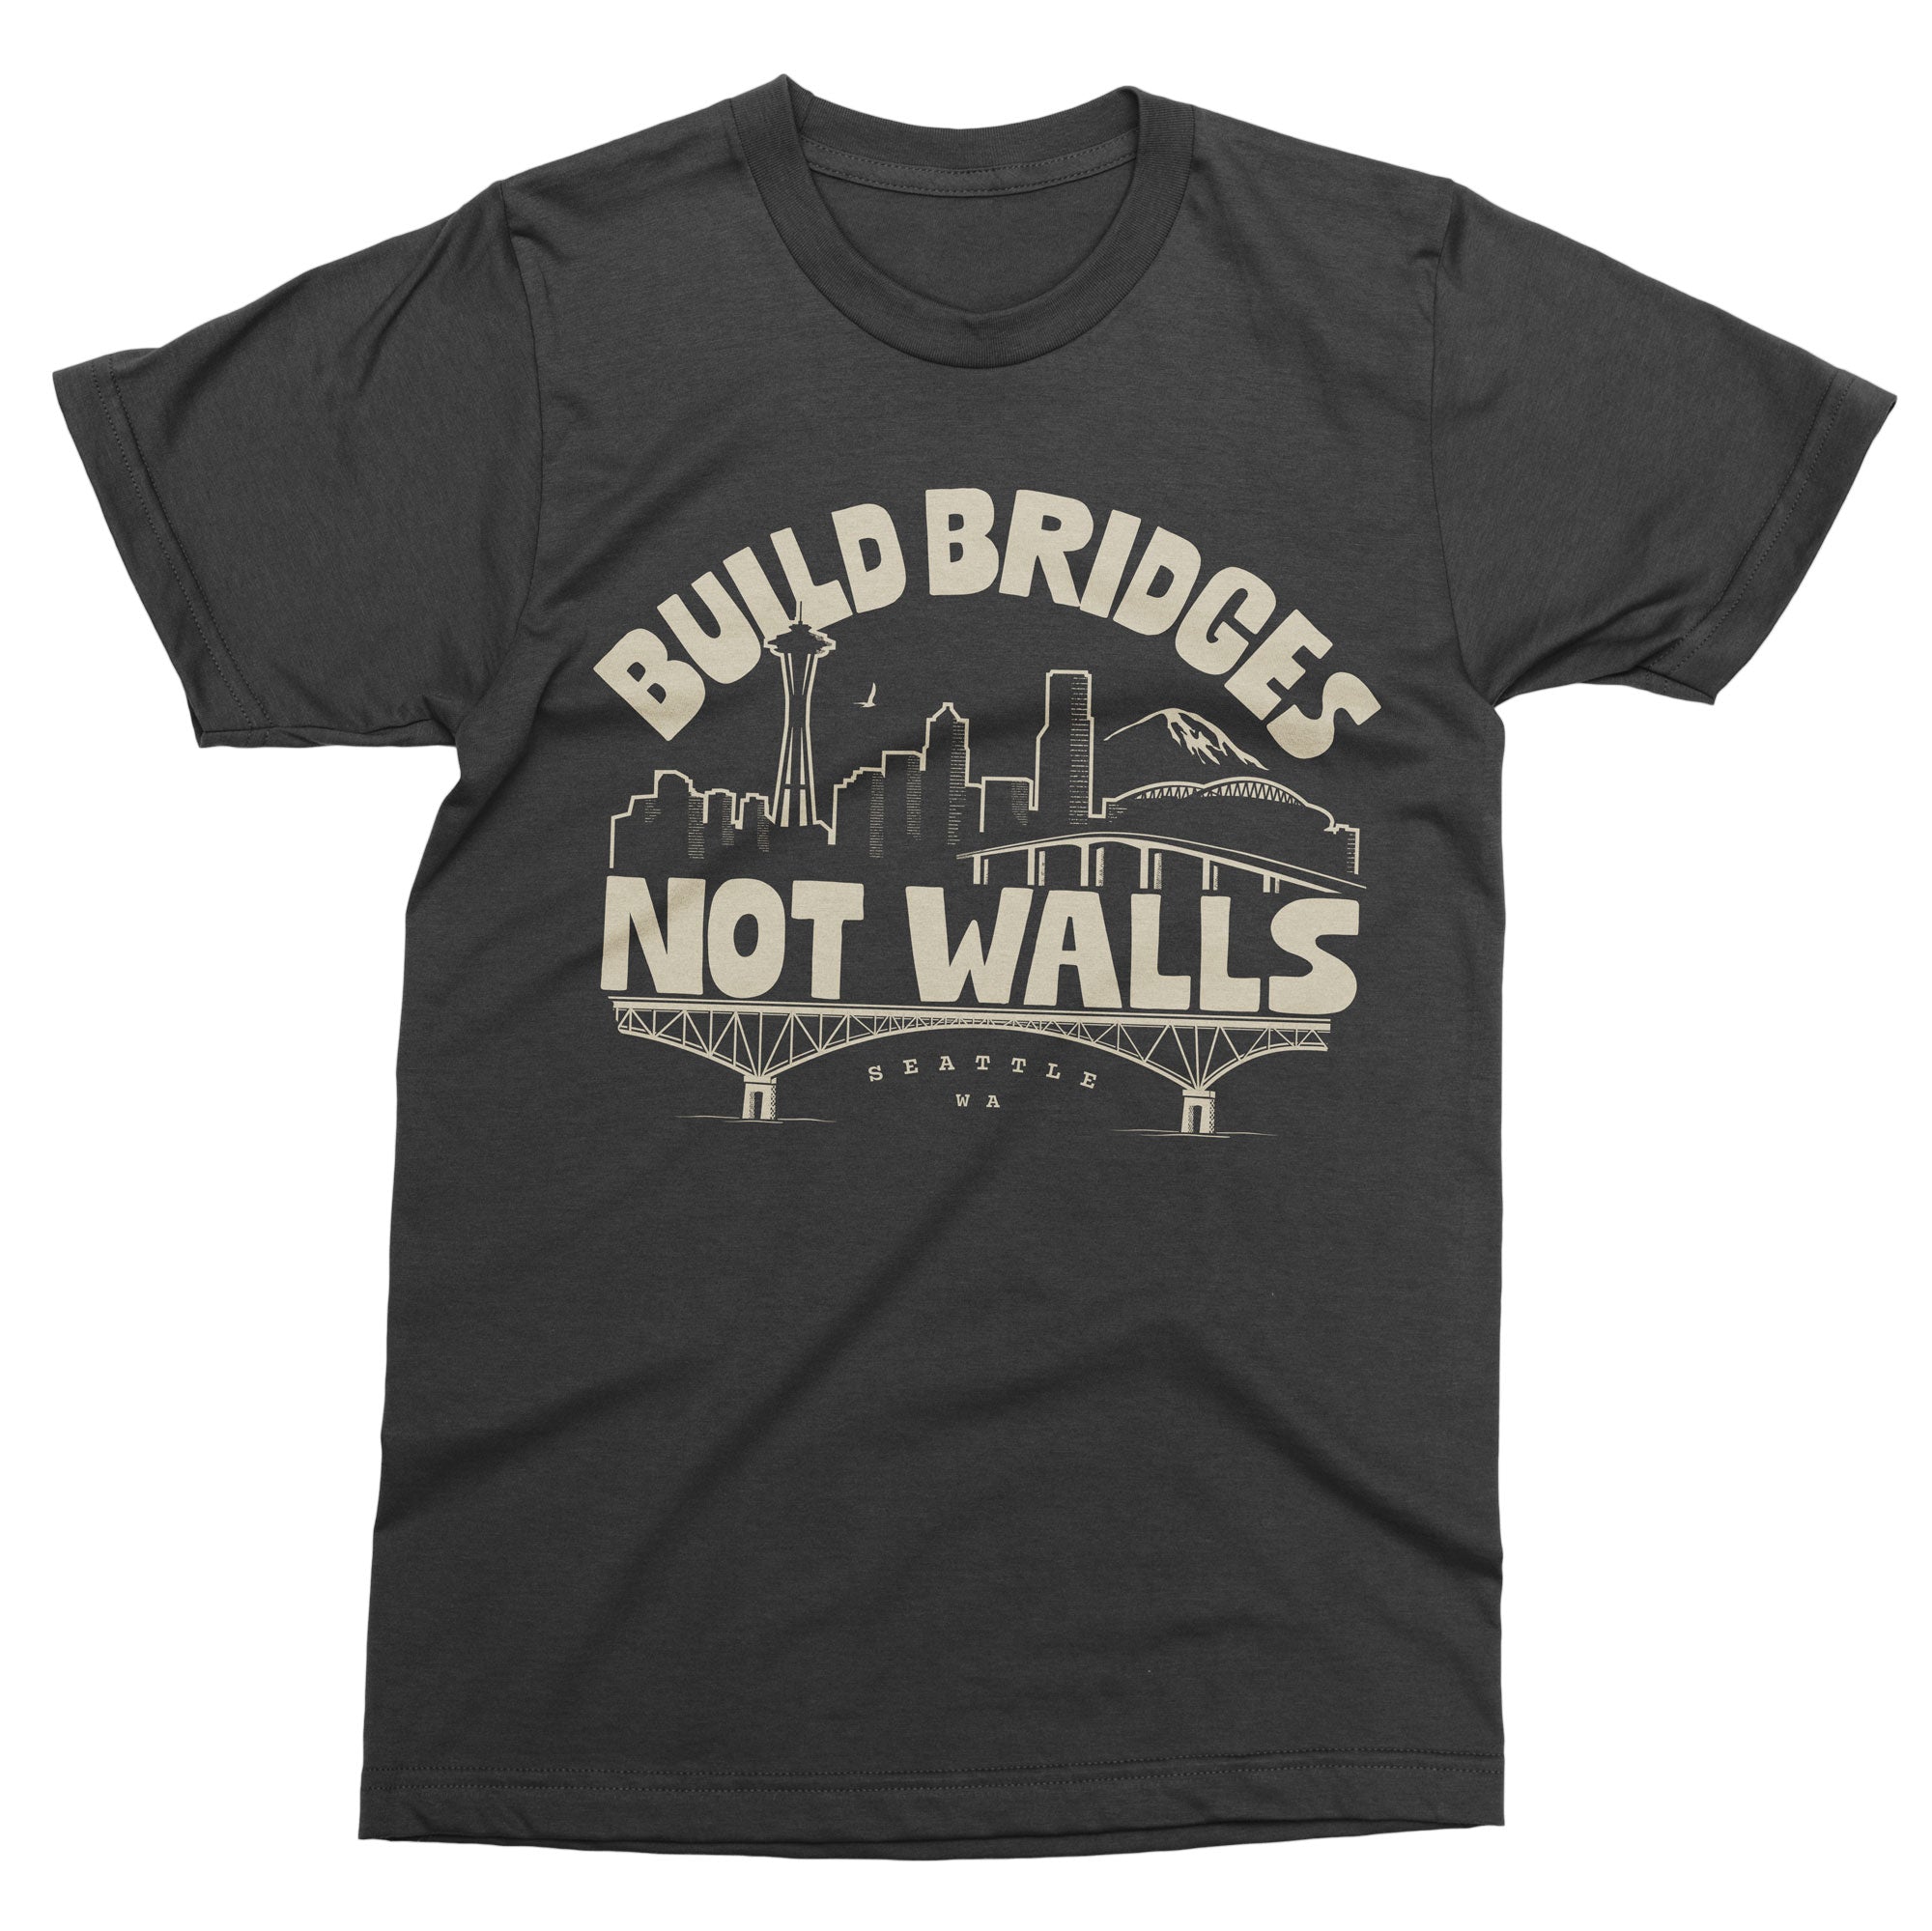 Build Bridges Not Walls tshirt